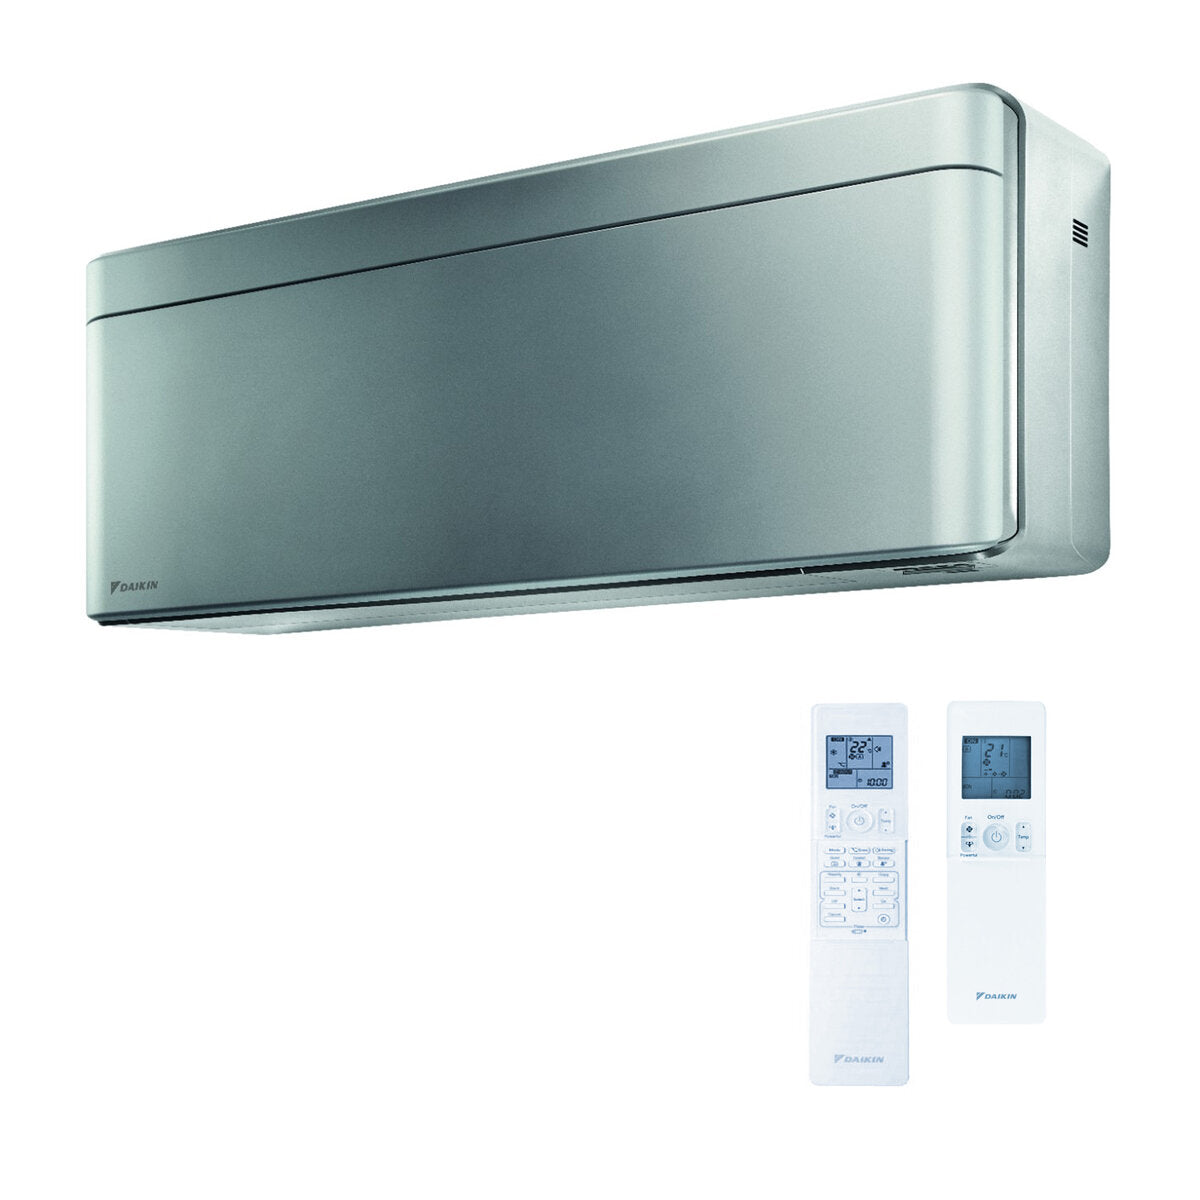 Daikin Stylish air conditioner penta split 7000 + 7000 + 7000 + 9000 + 9000 BTU inverter A ++ wifi outdoor unit 9 kW